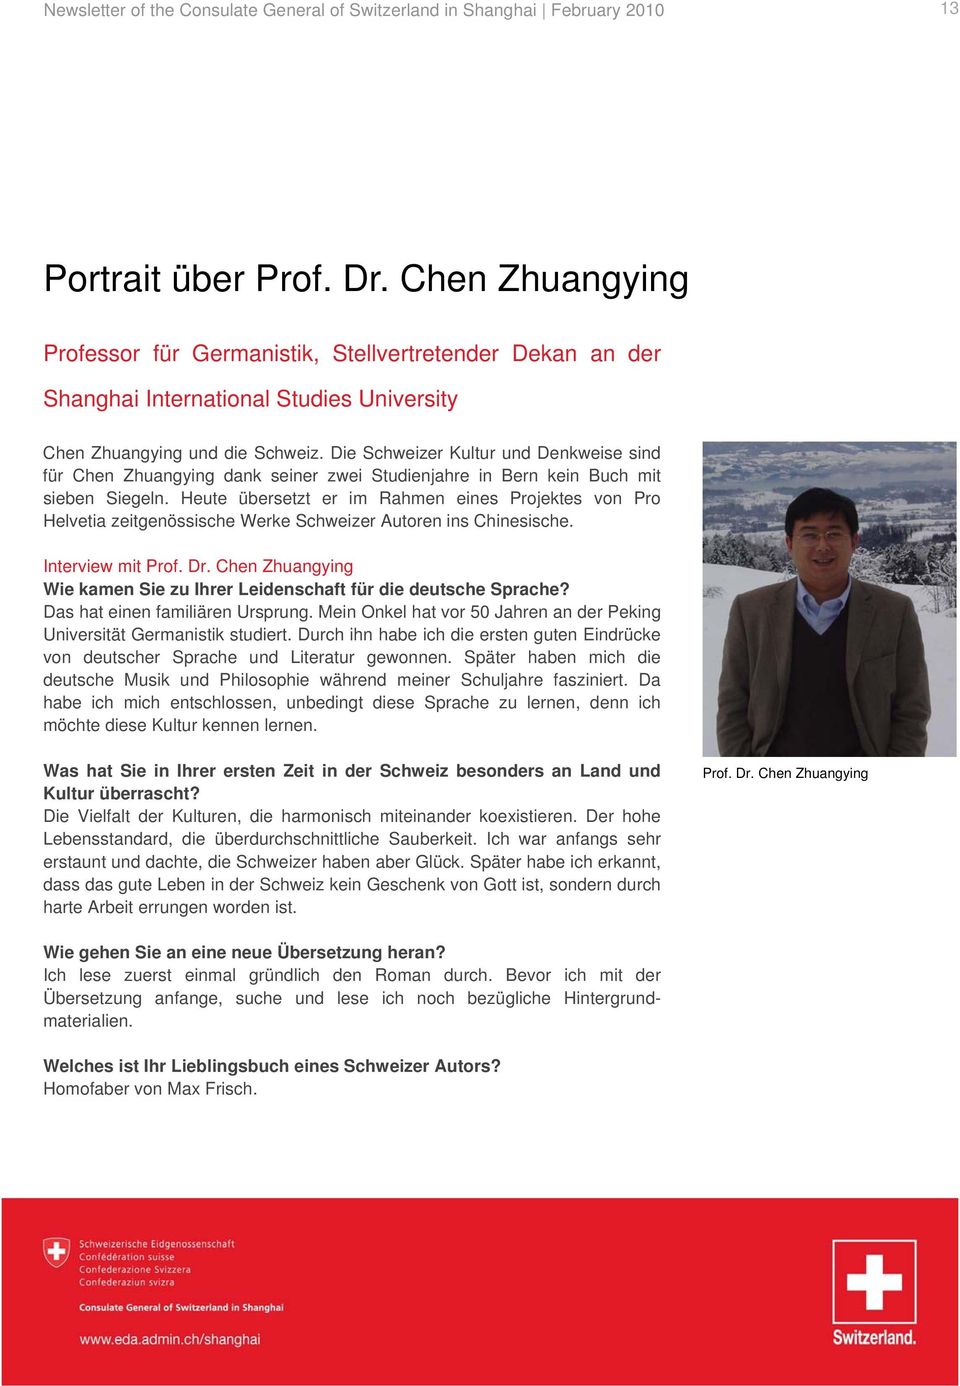 Die Schweizer Kultur und Denkweise sind für Chen Zhuangying dank seiner zwei Studienjahre in Bern kein Buch mit sieben Siegeln.